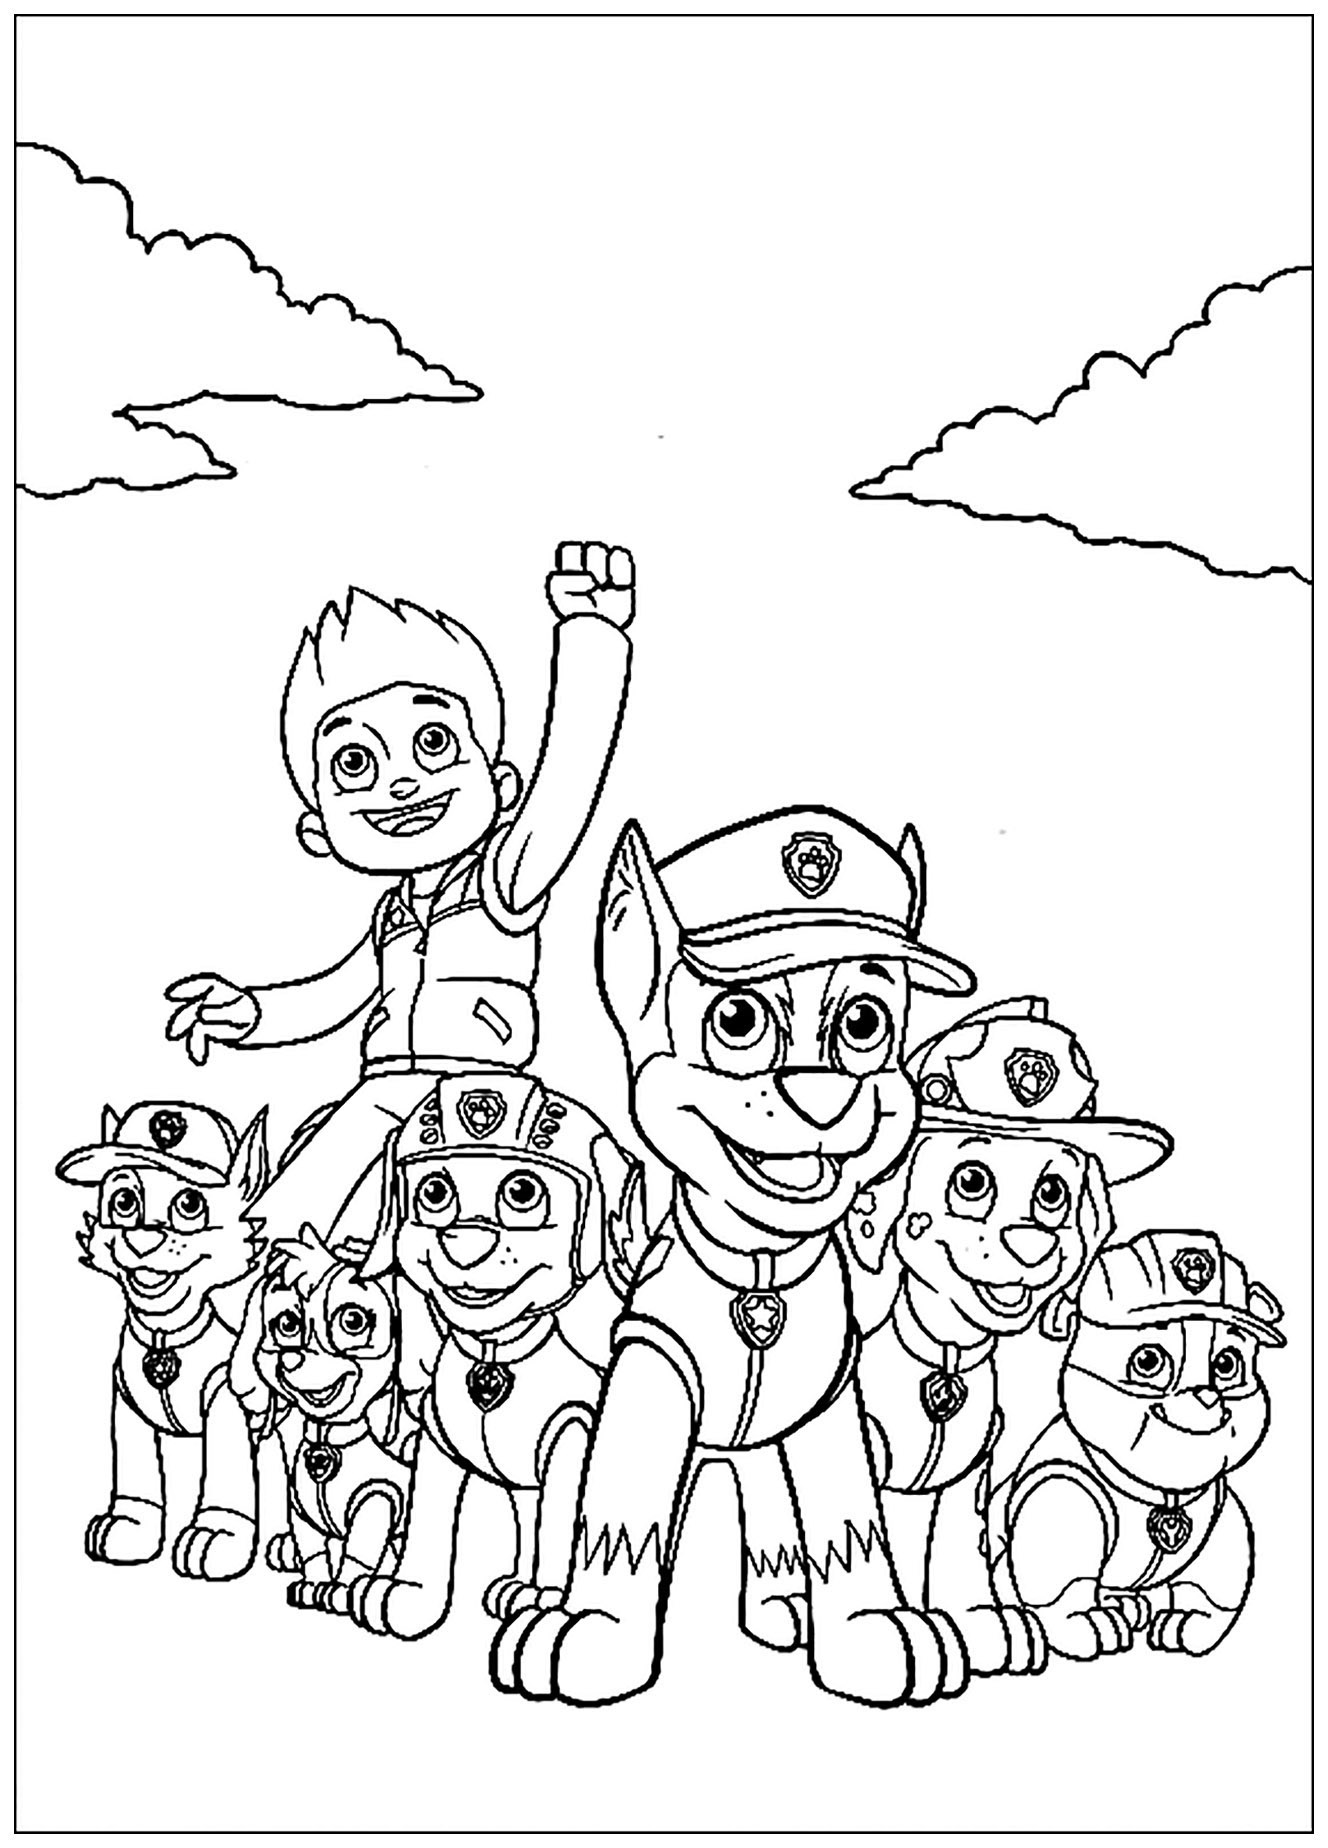 Desenho de patrulha PAW para colorir, fácil para as crianças : Missão cumprida